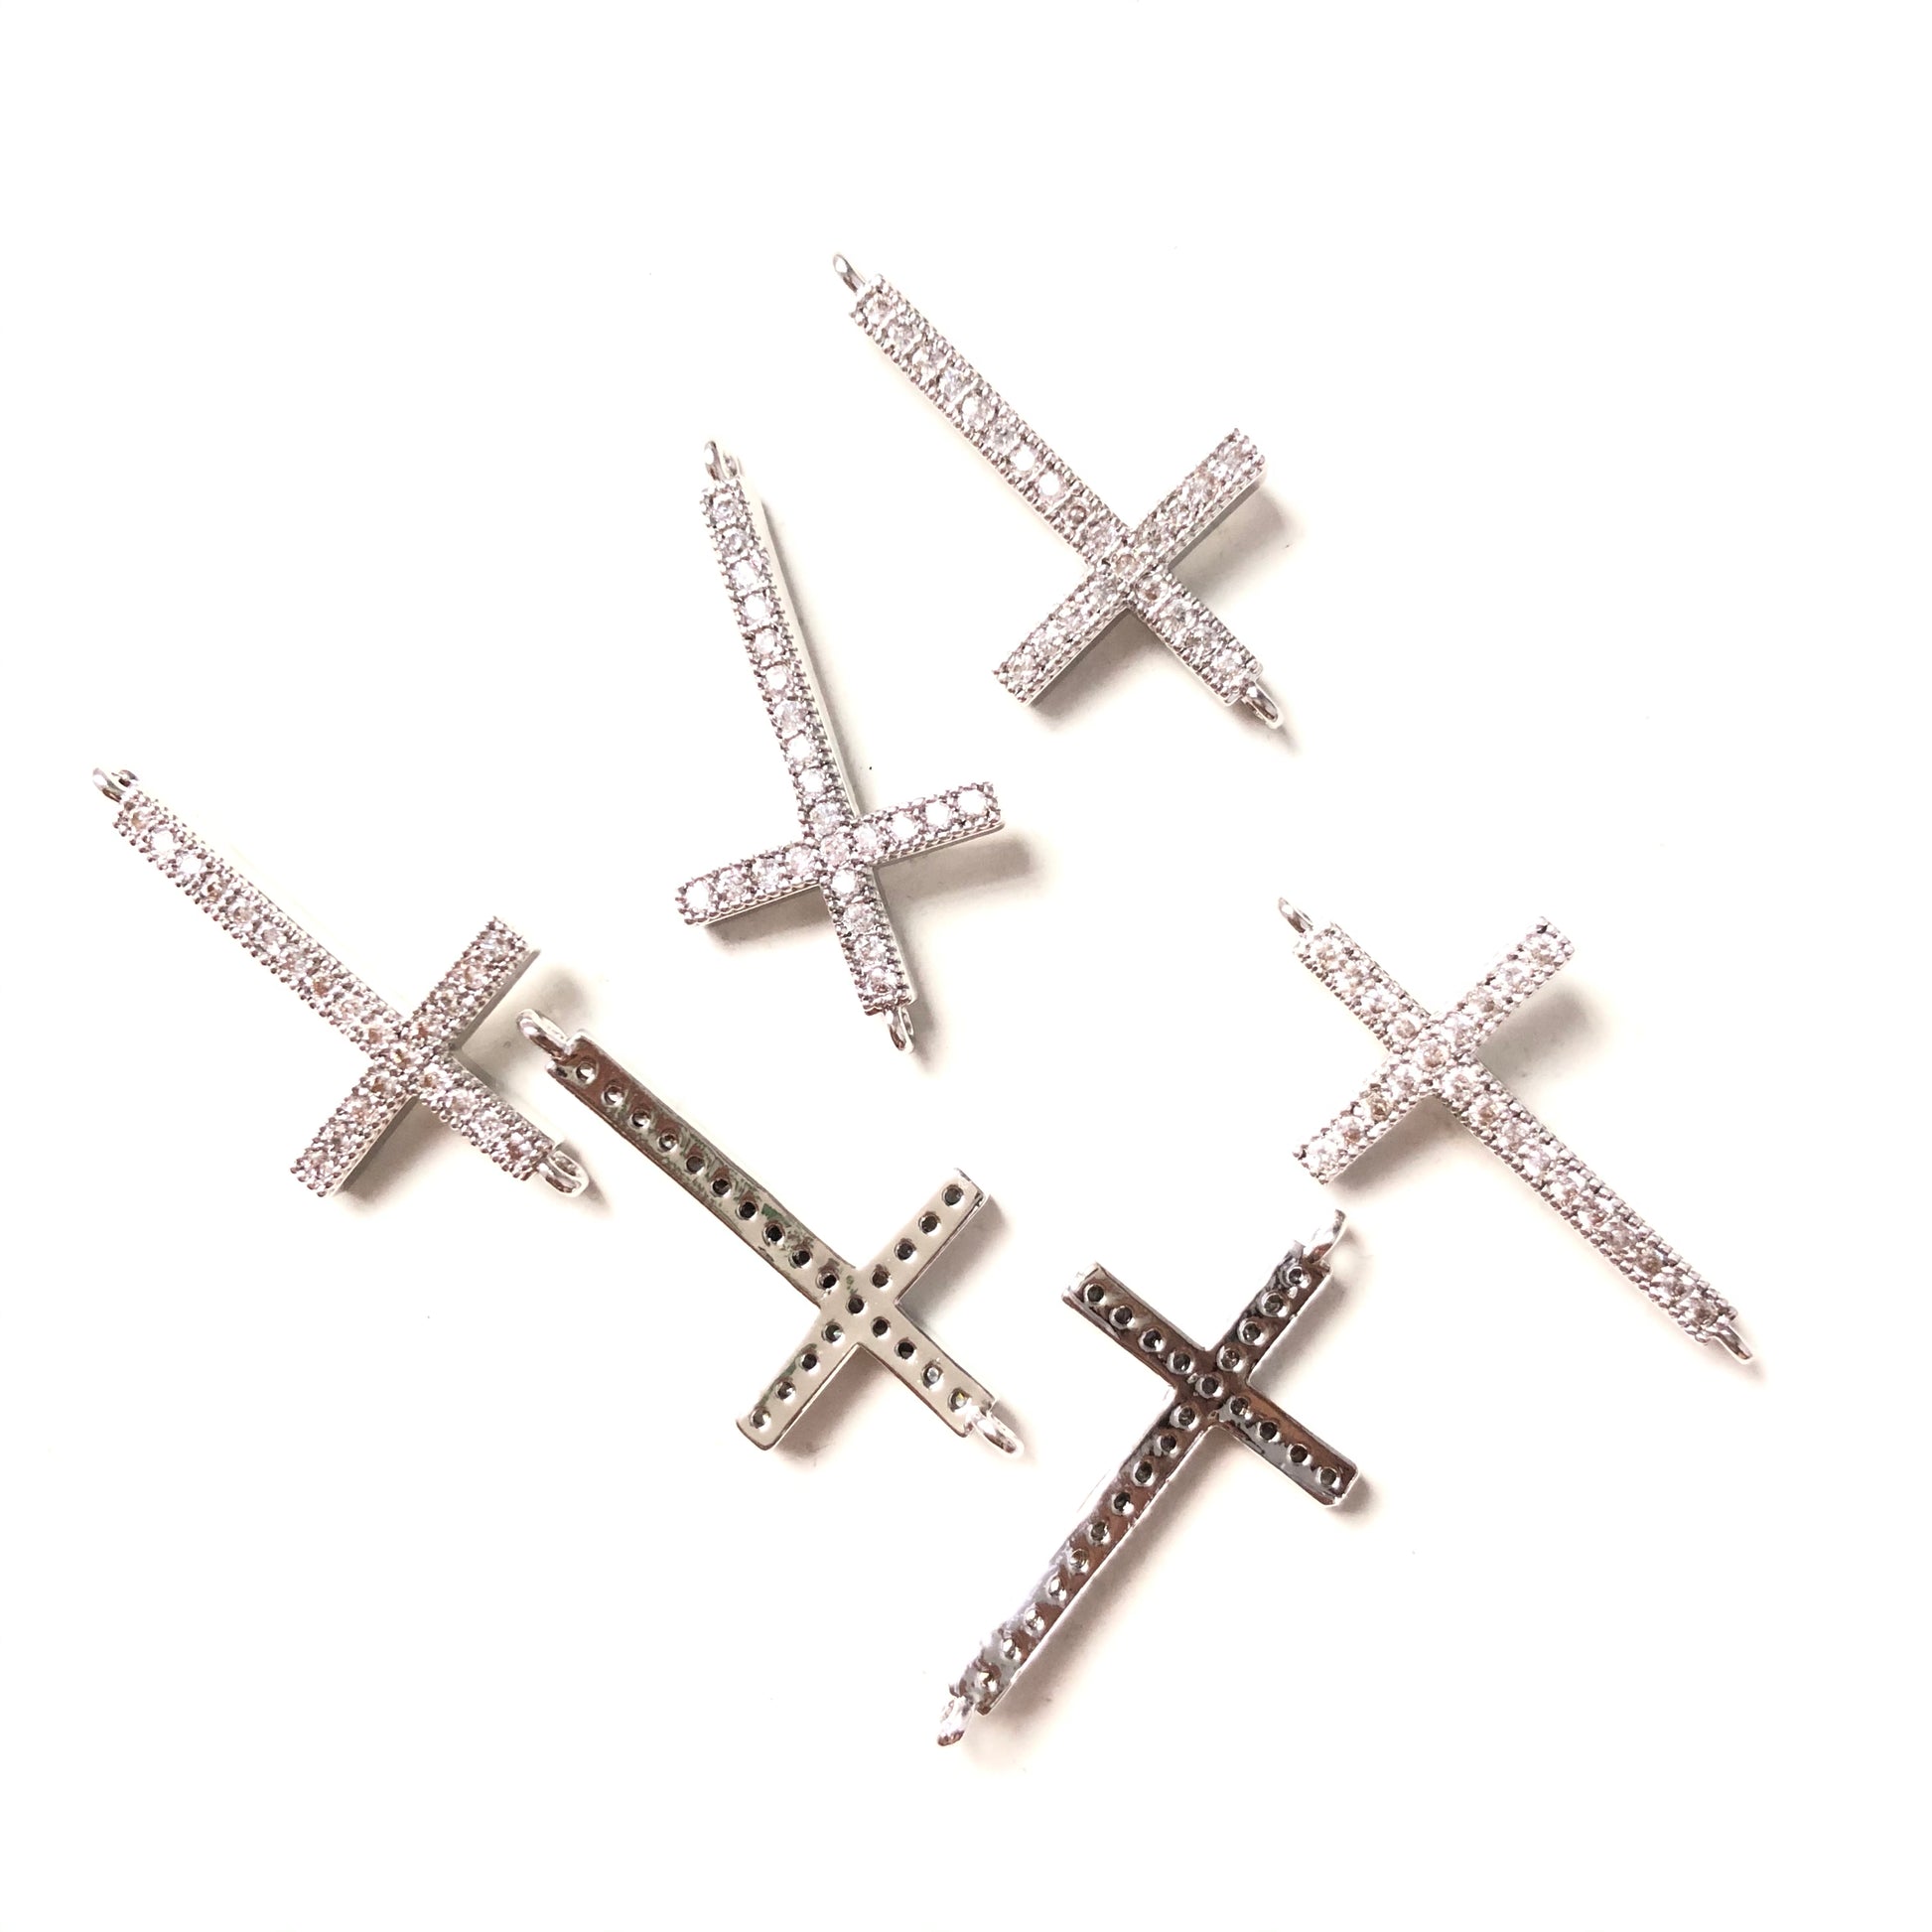 10pcs/lot 30.7*16mm CZ Paved Cross Connectors Silver CZ Paved Connectors Cross Charms Beads Beyond